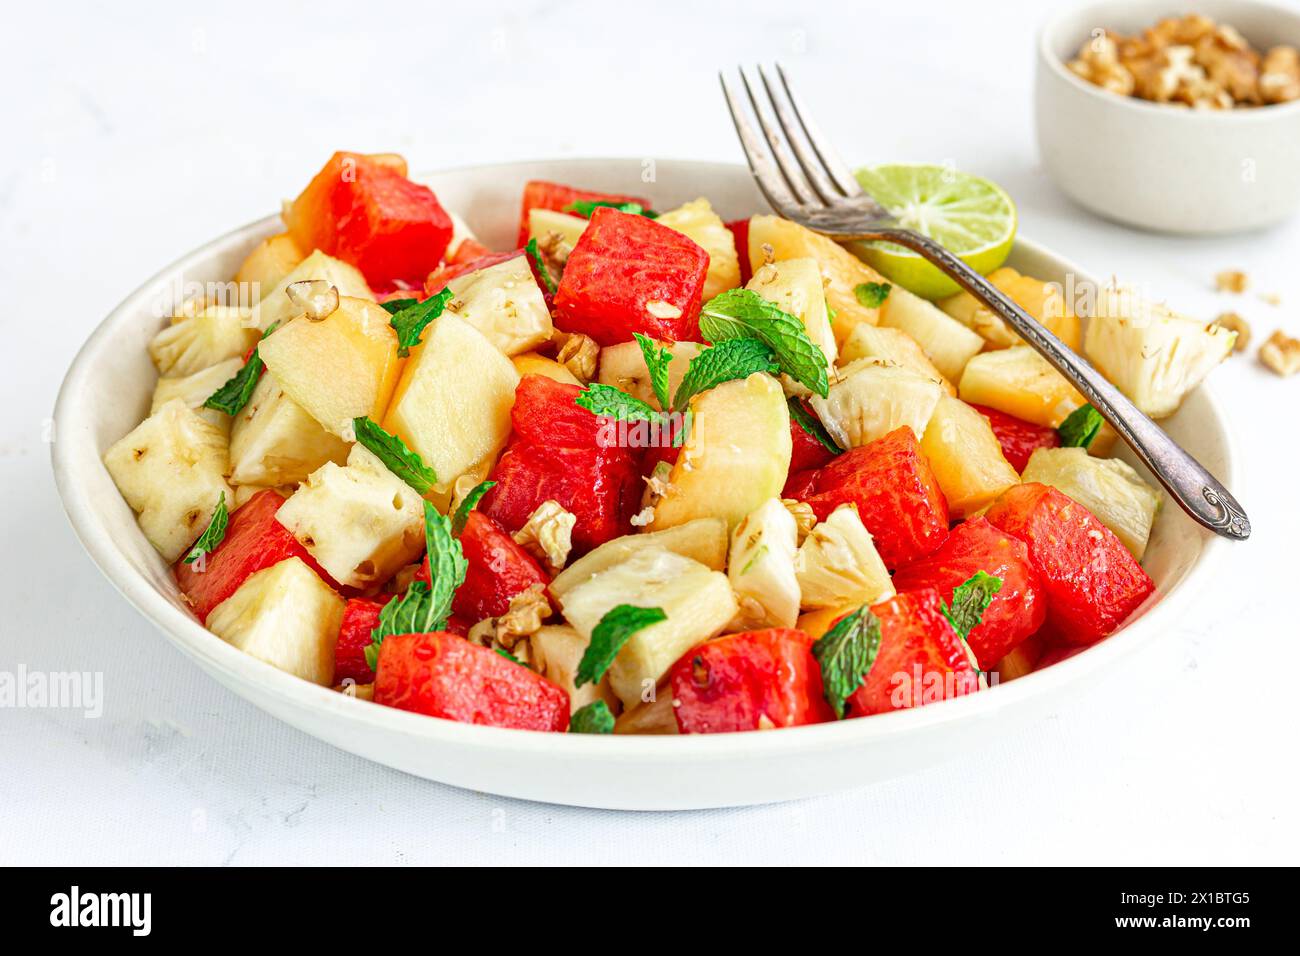 Erfrischend und gesund Wassermelone und Ananassalat garniert mit Minzblättern Nahaufnahme gesunde Lebensmittel Fotografie Stockfoto